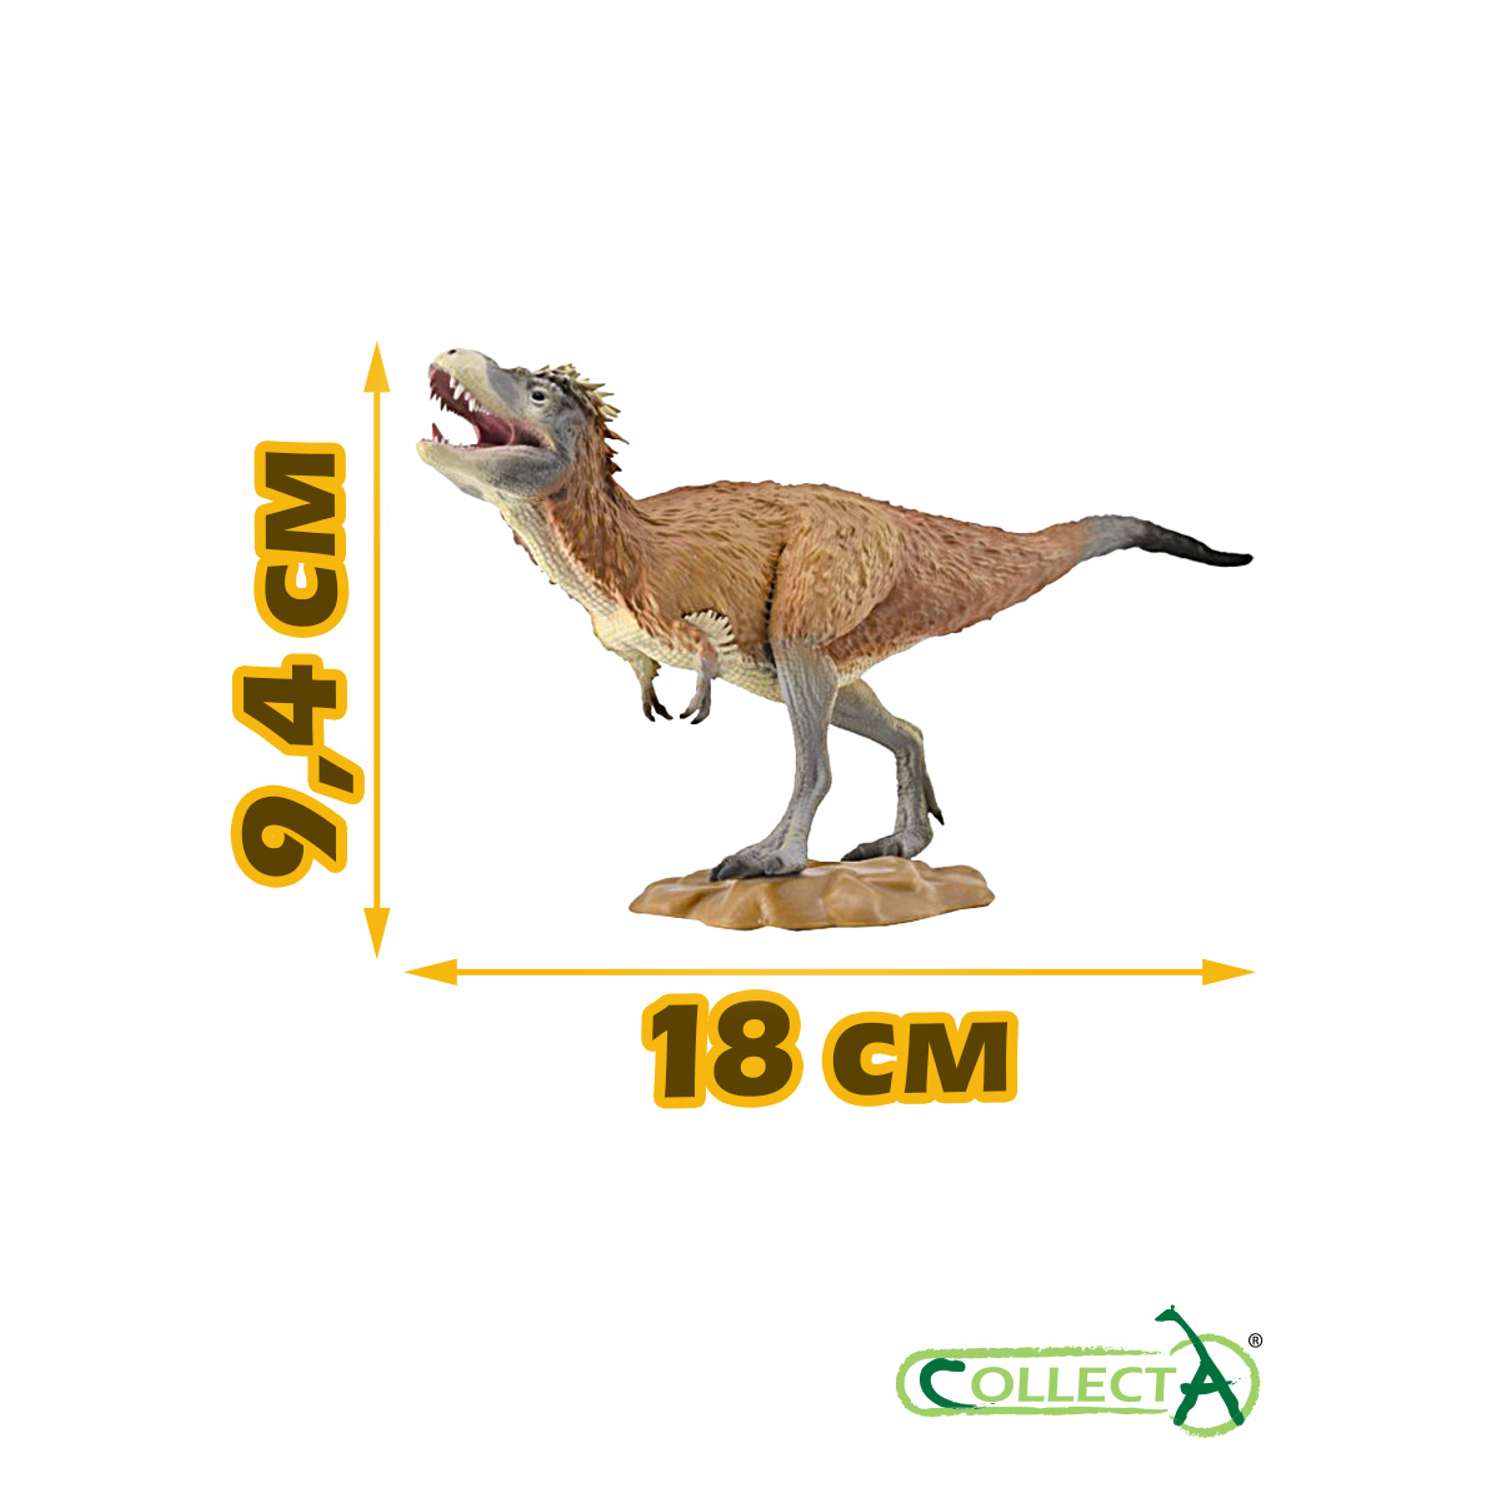 Игрушка Collecta Литронакс фигурка динозавра - фото 2